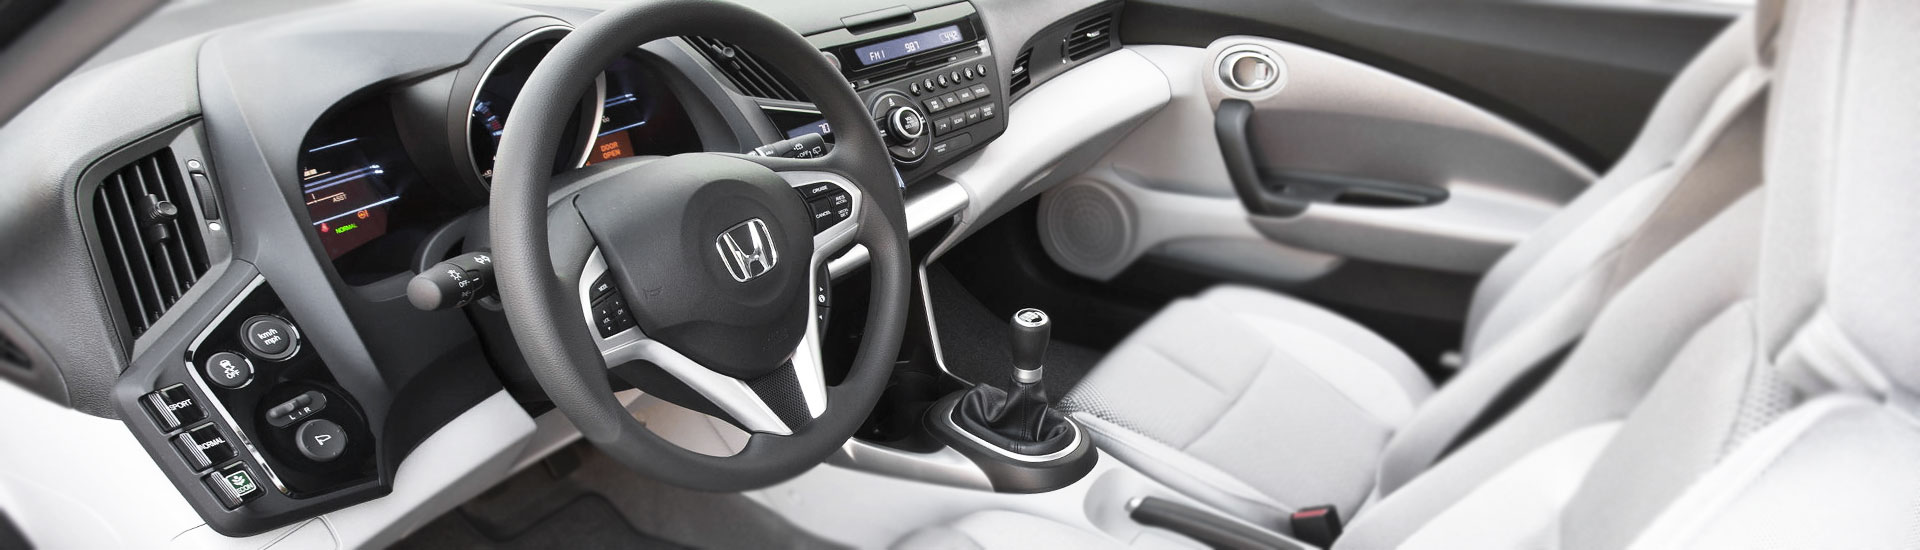 Honda CR-Z Custom Dash Kits